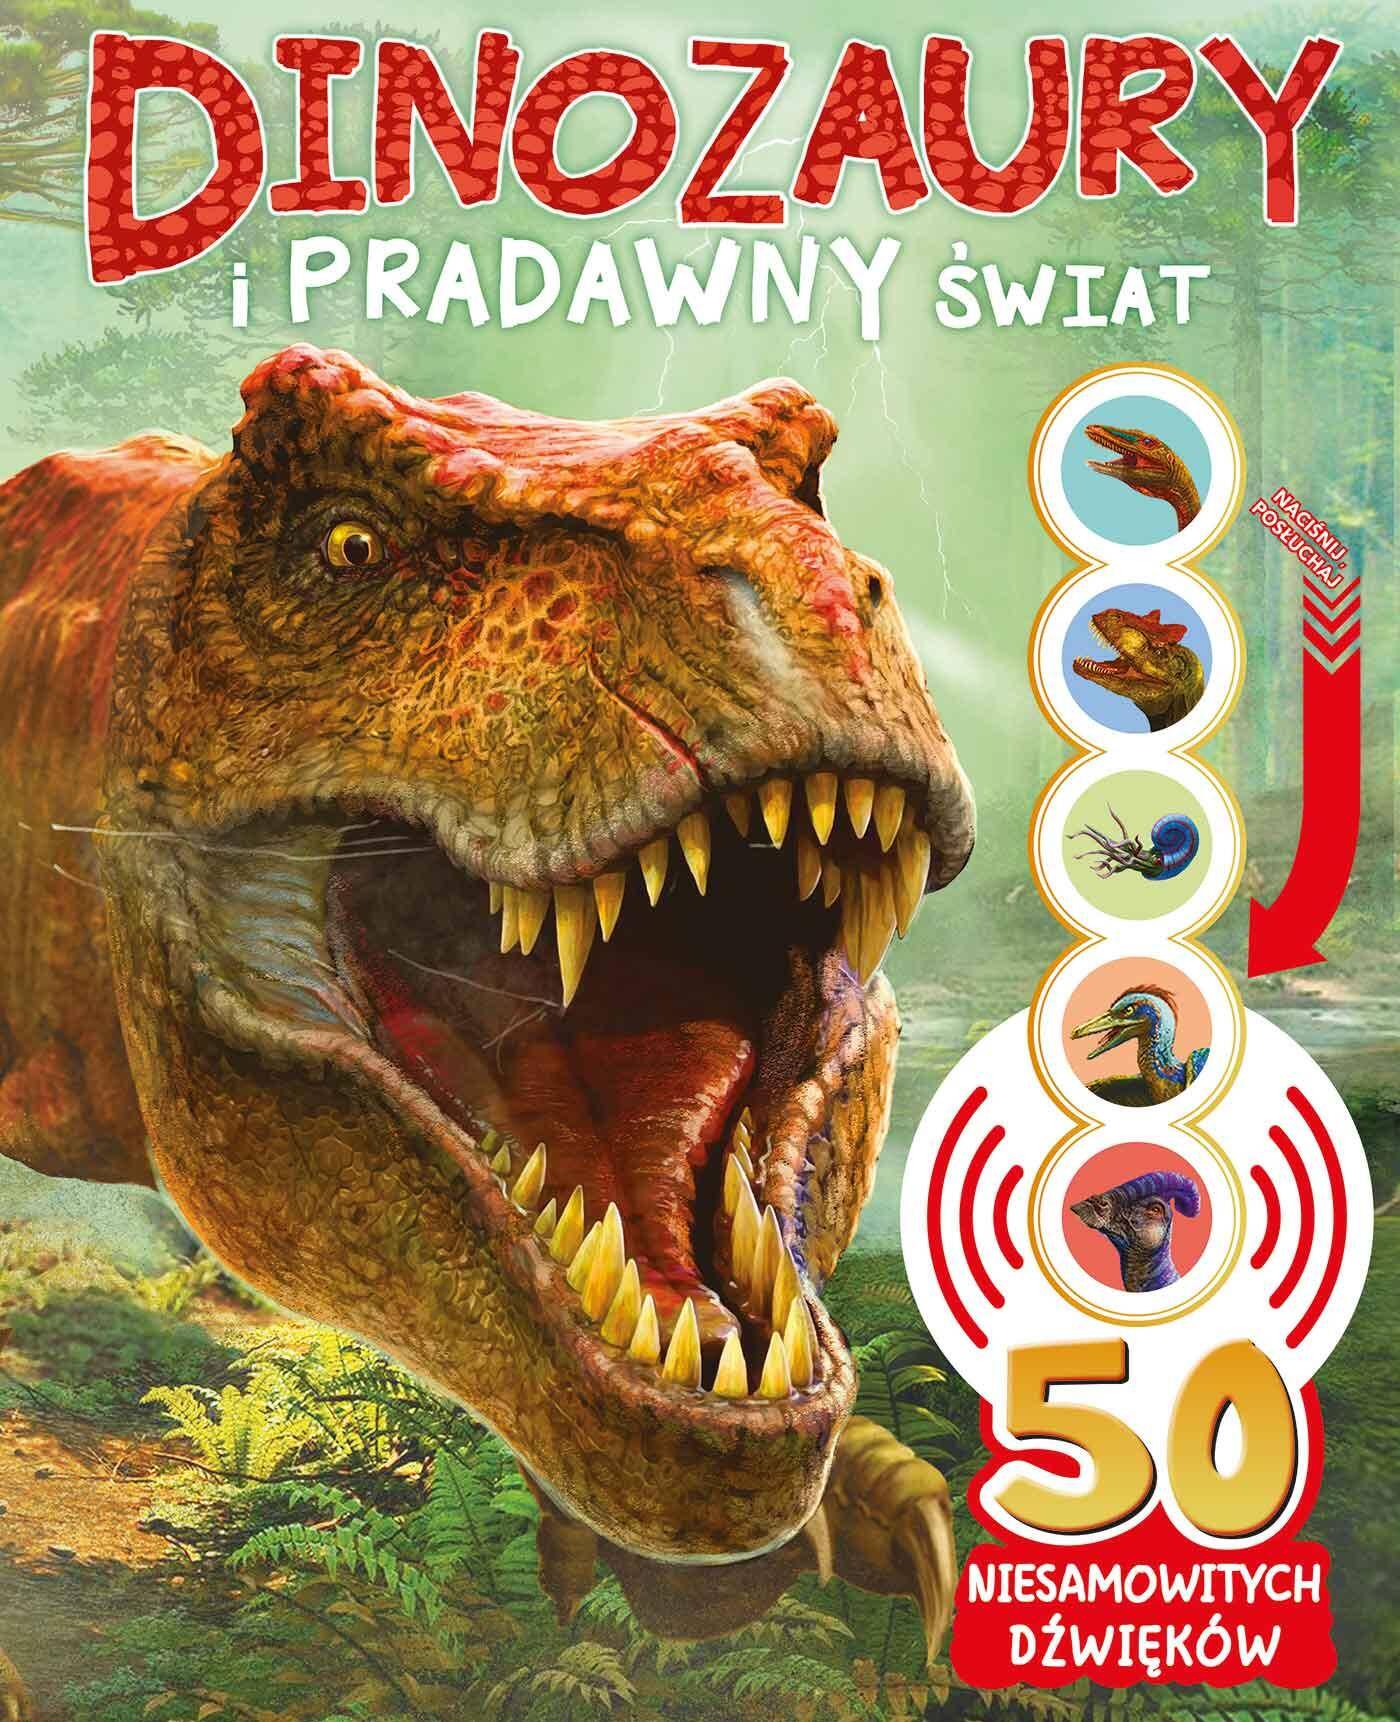 Dinozaury i pradawny świat. 50 niesamowitych dźwięków